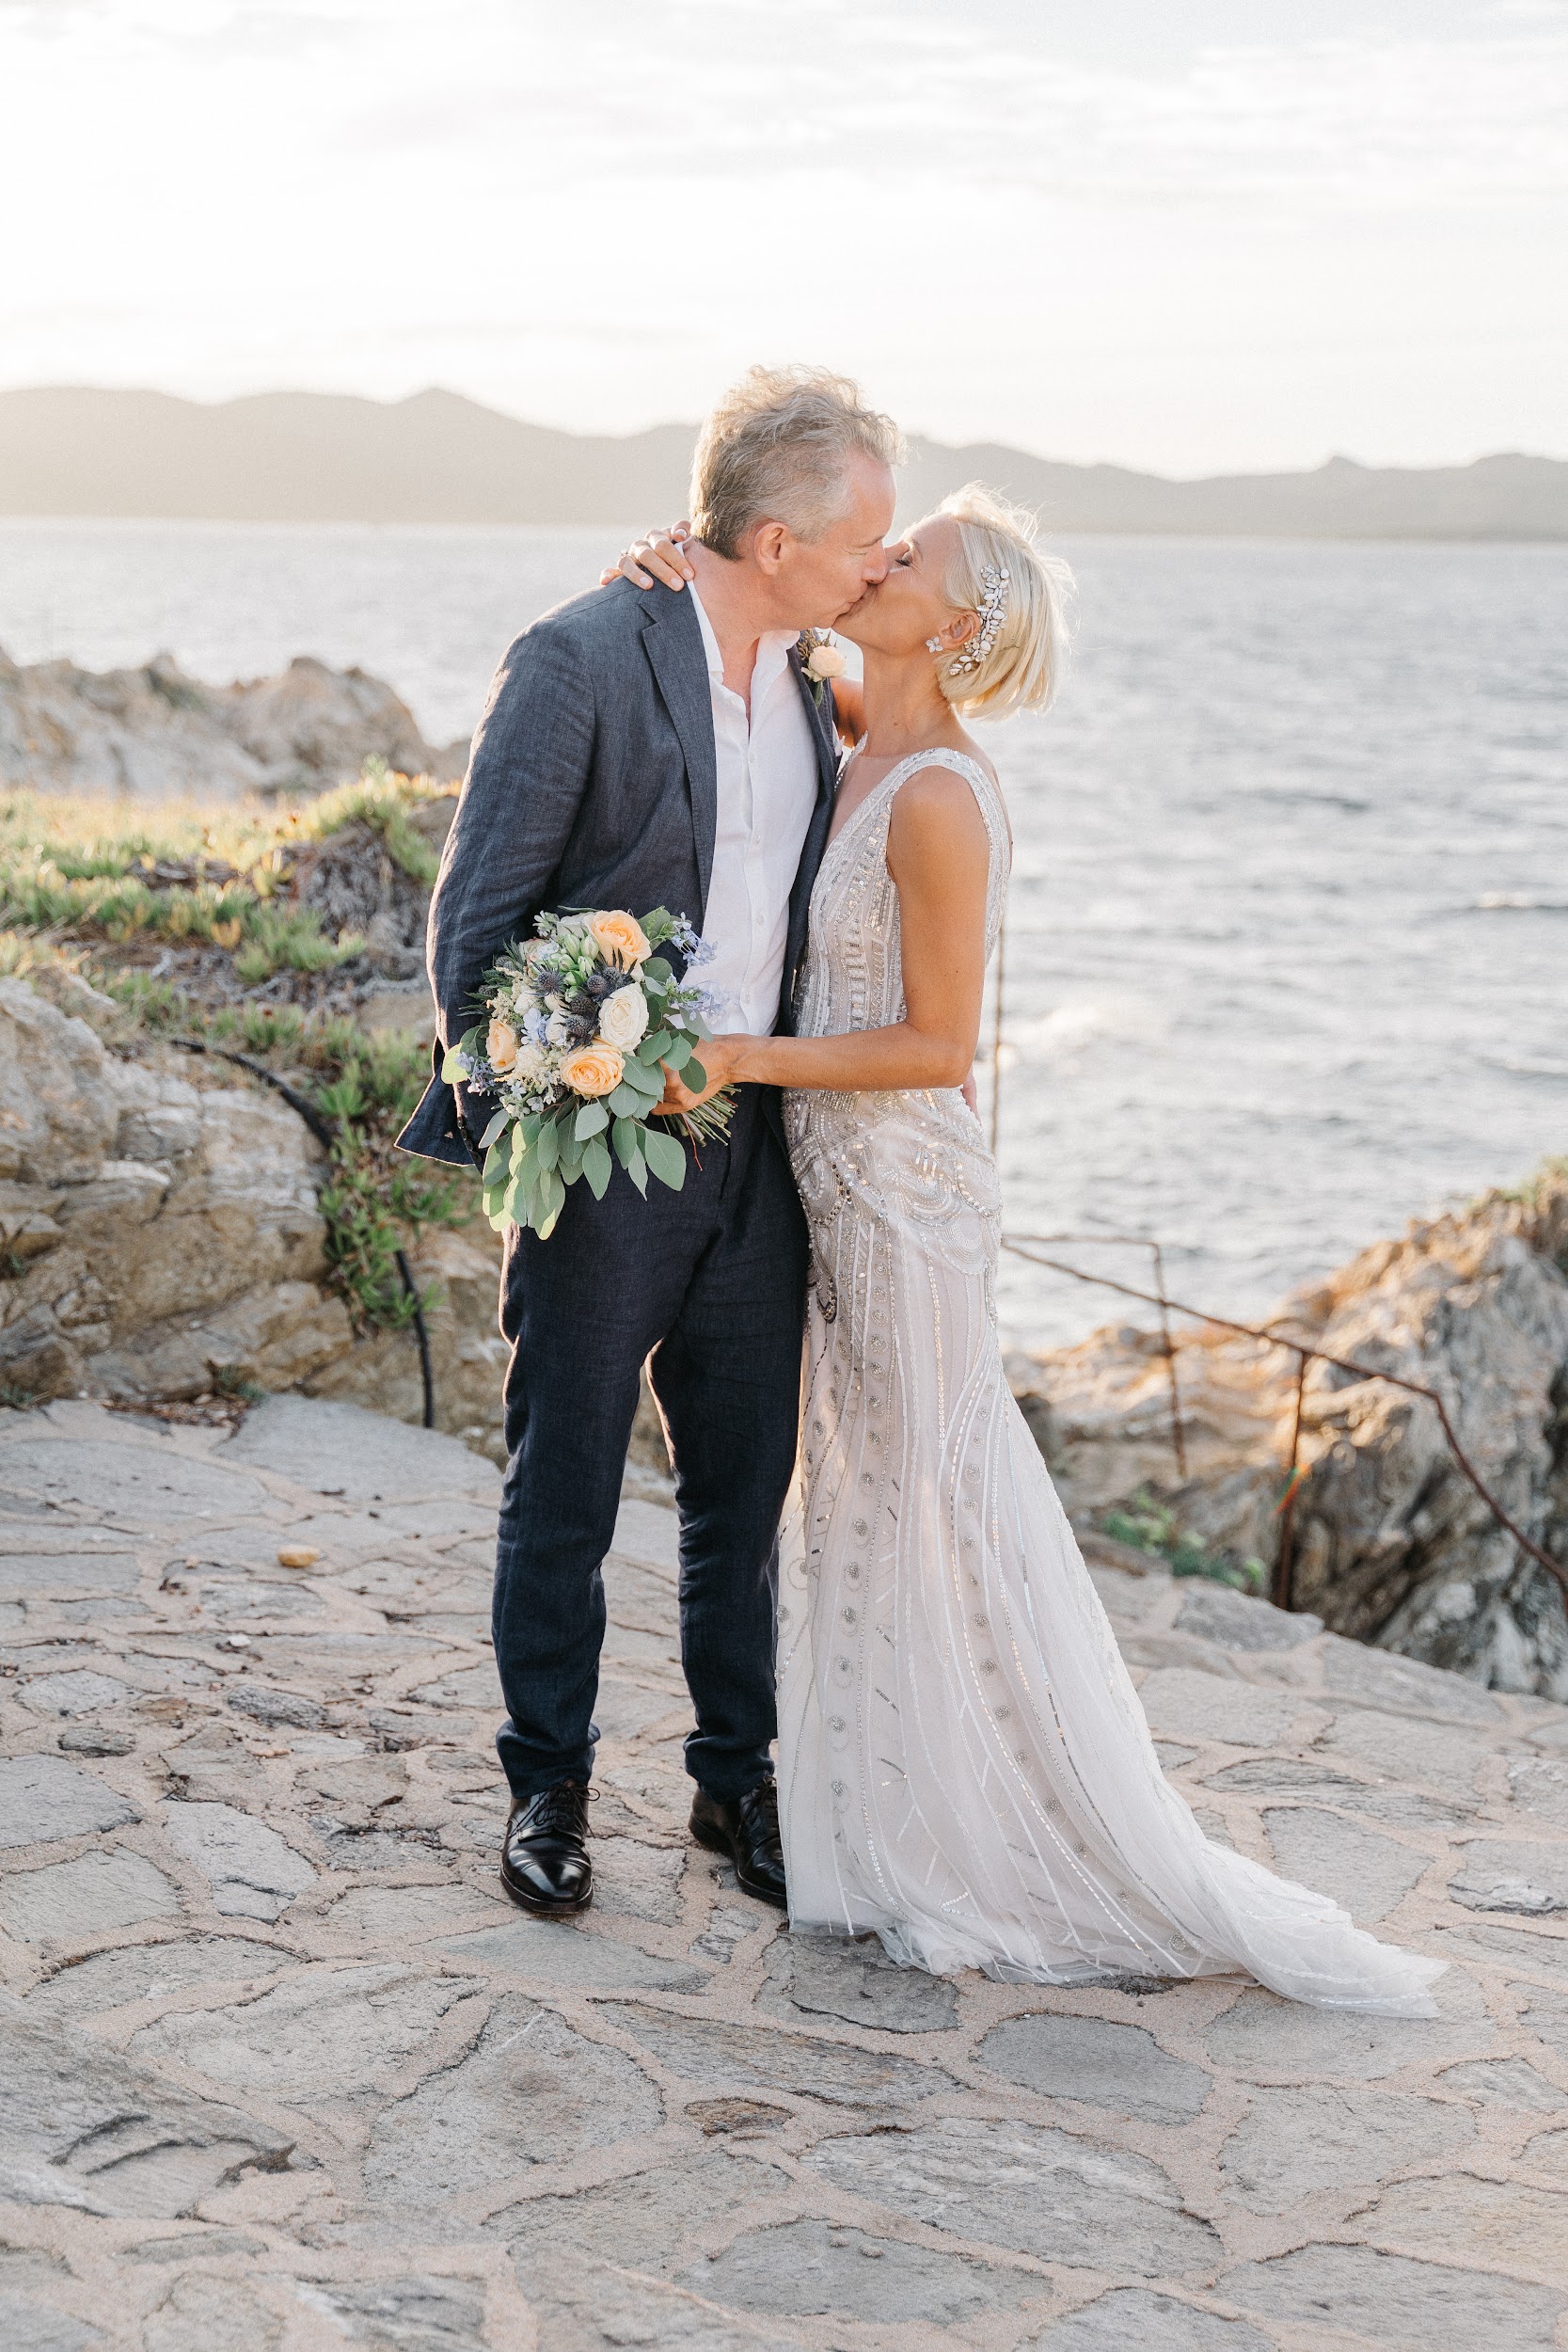 Mediterranean-inspired wedding ideas